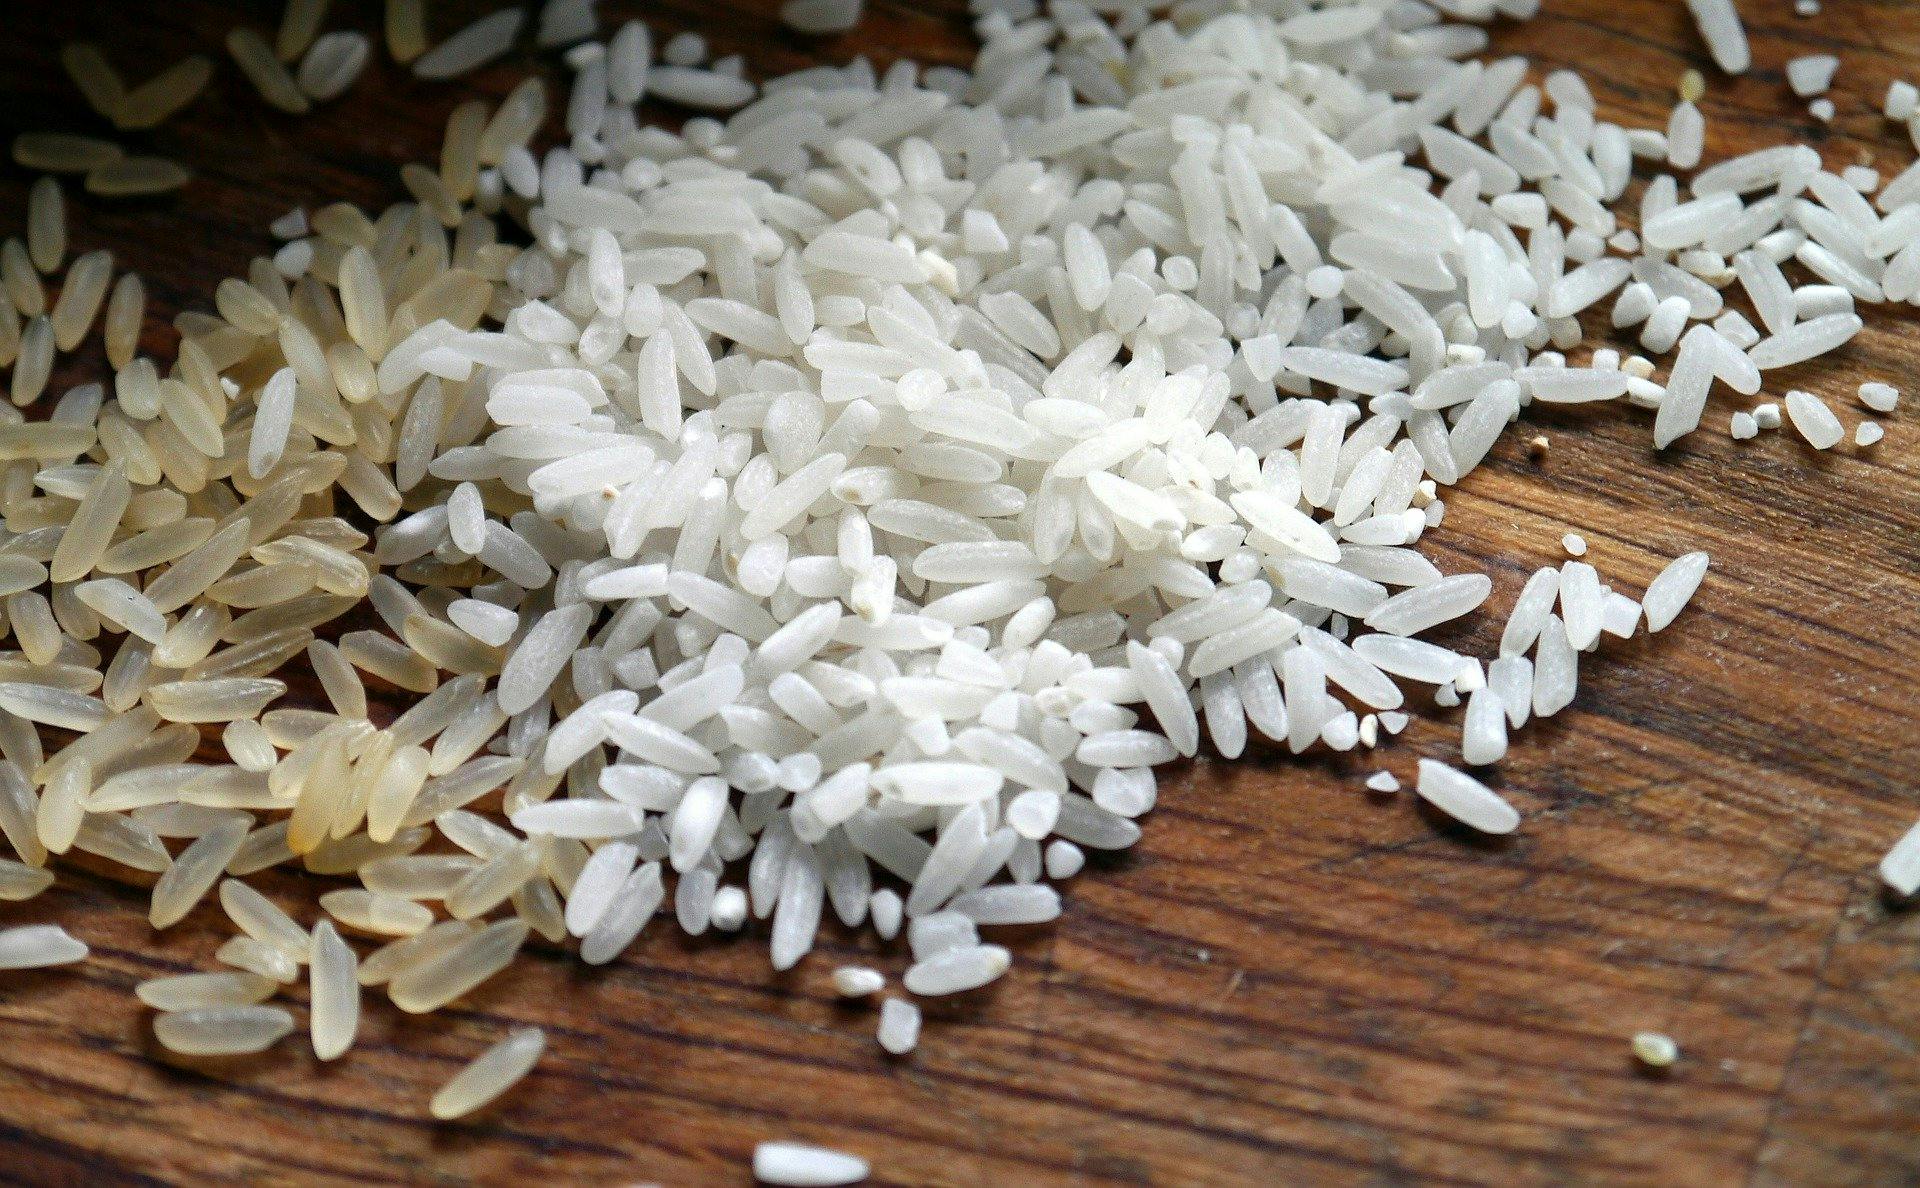 FARINE DE RIZ La farine de riz est faite de riz cru moulu 